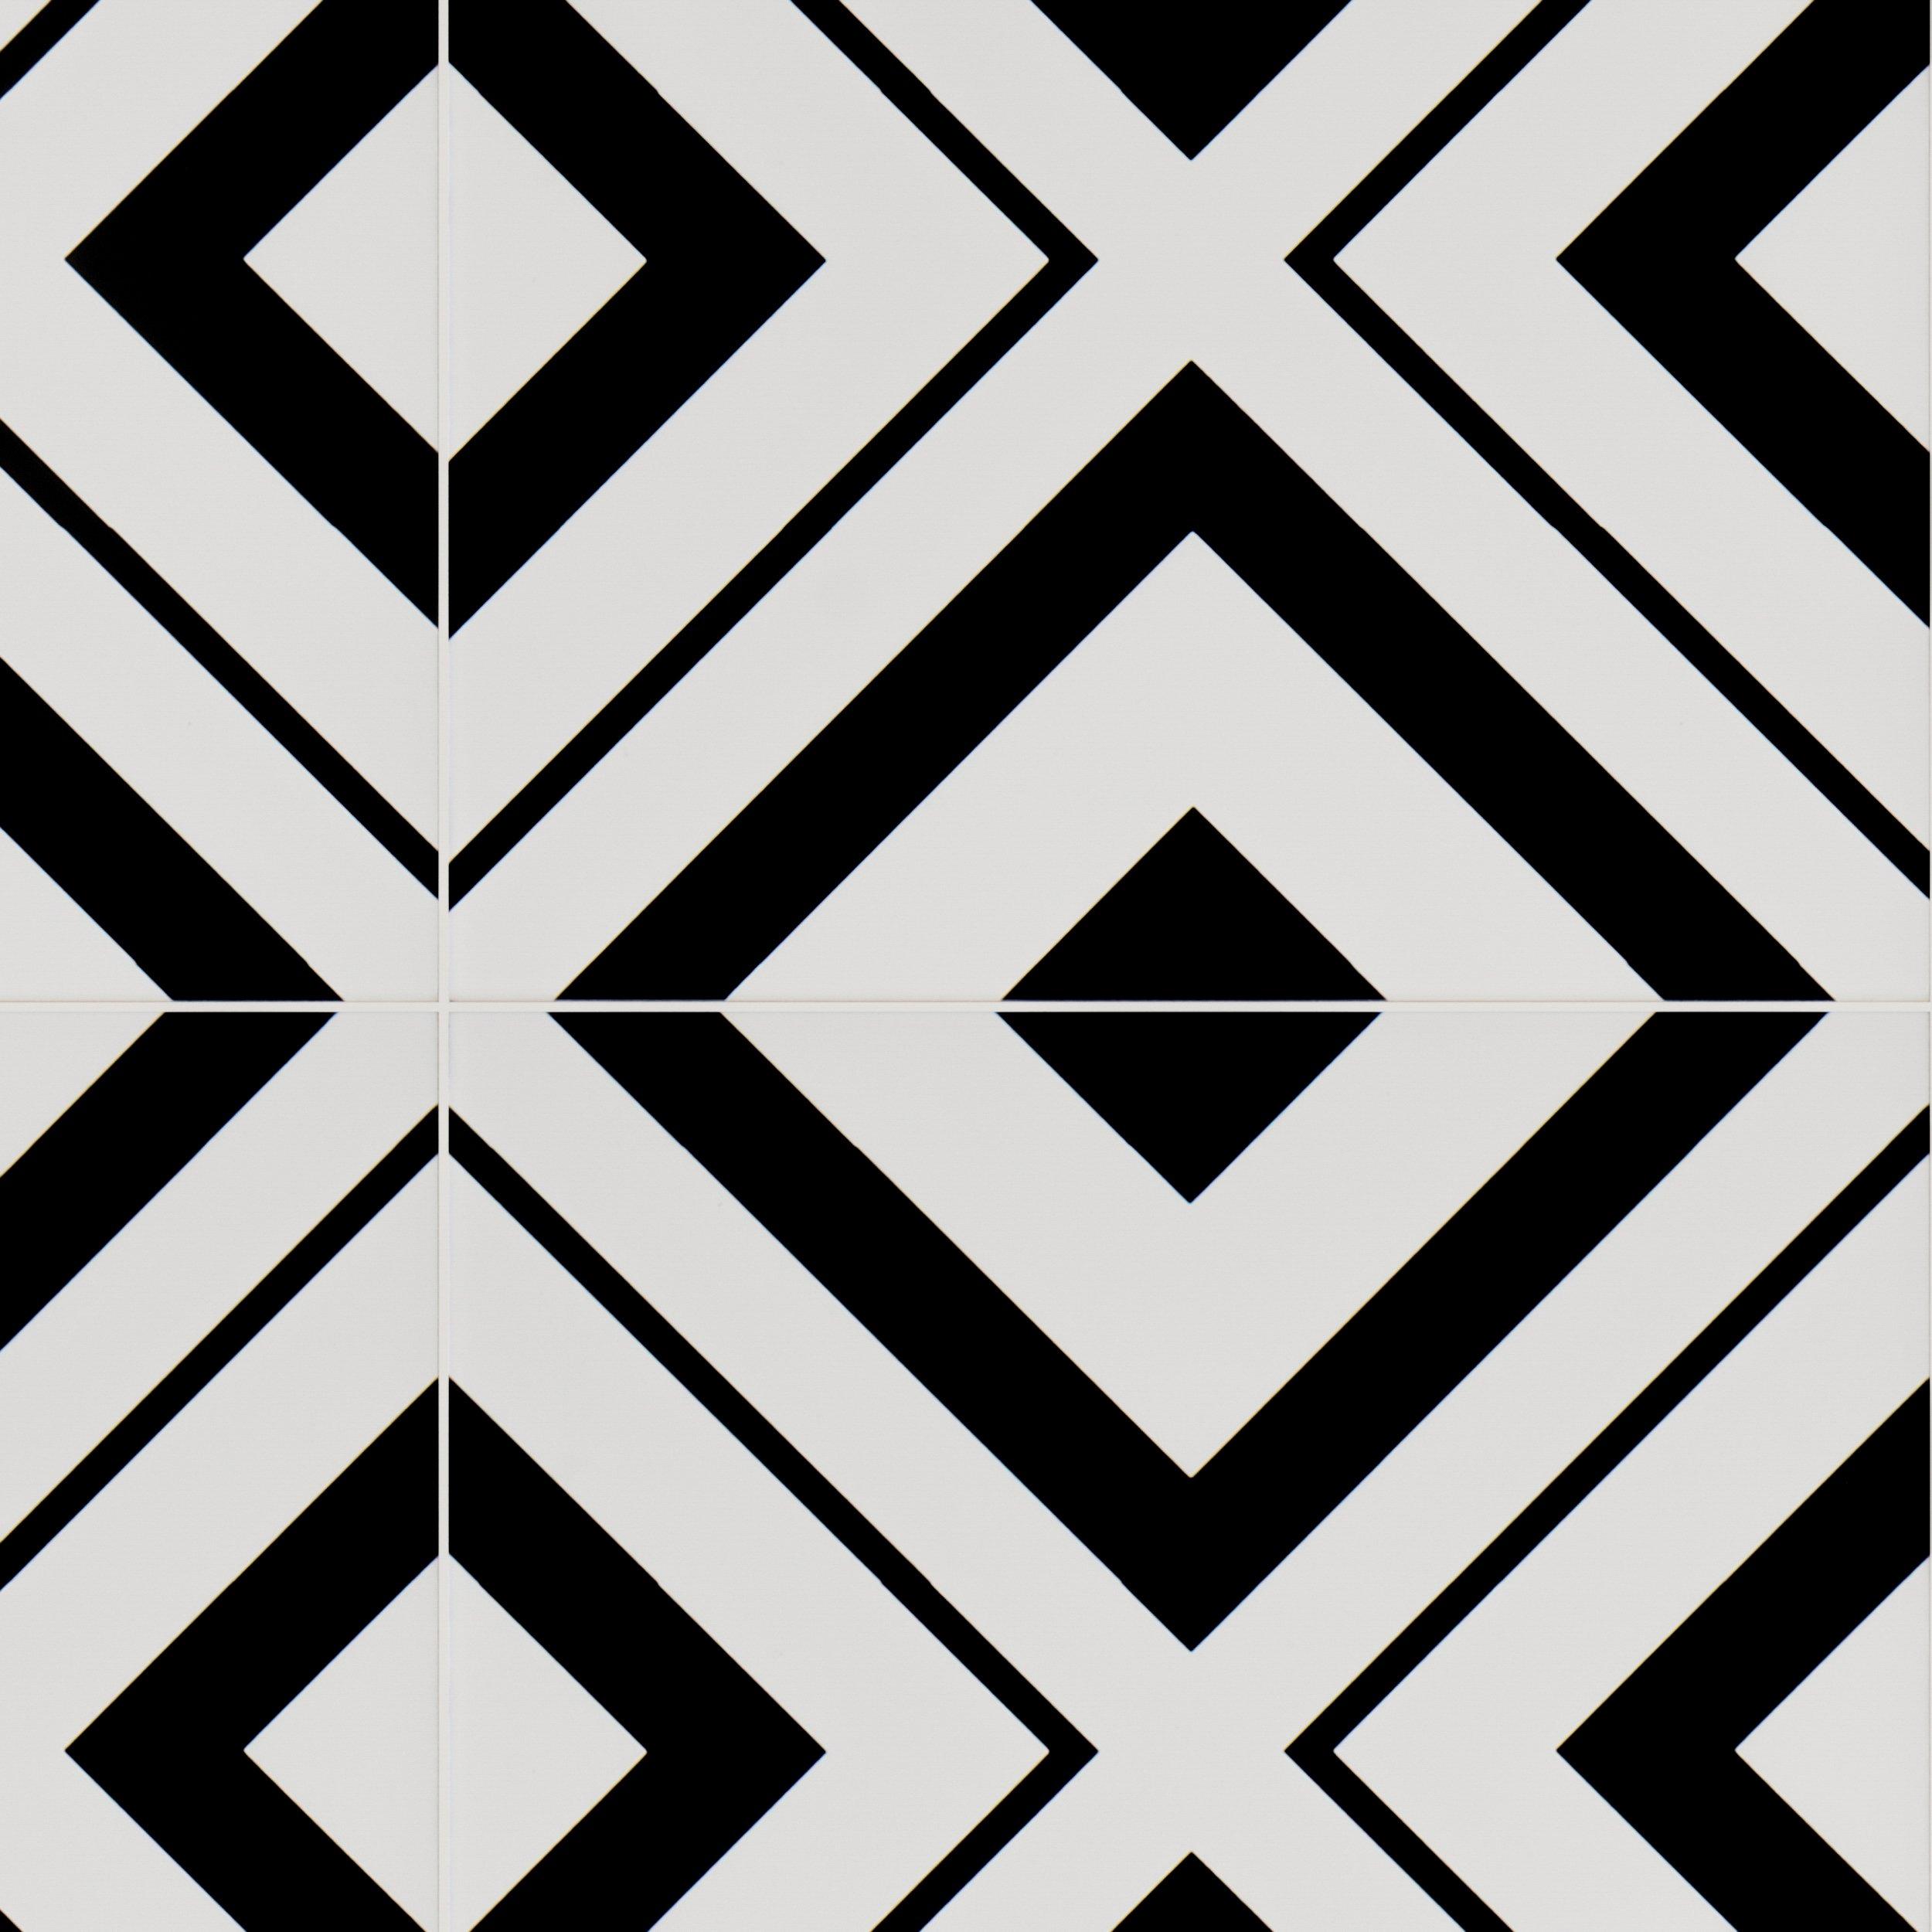 Haus Black White Porcelain Tile Floor, Black And White Pattern Tile